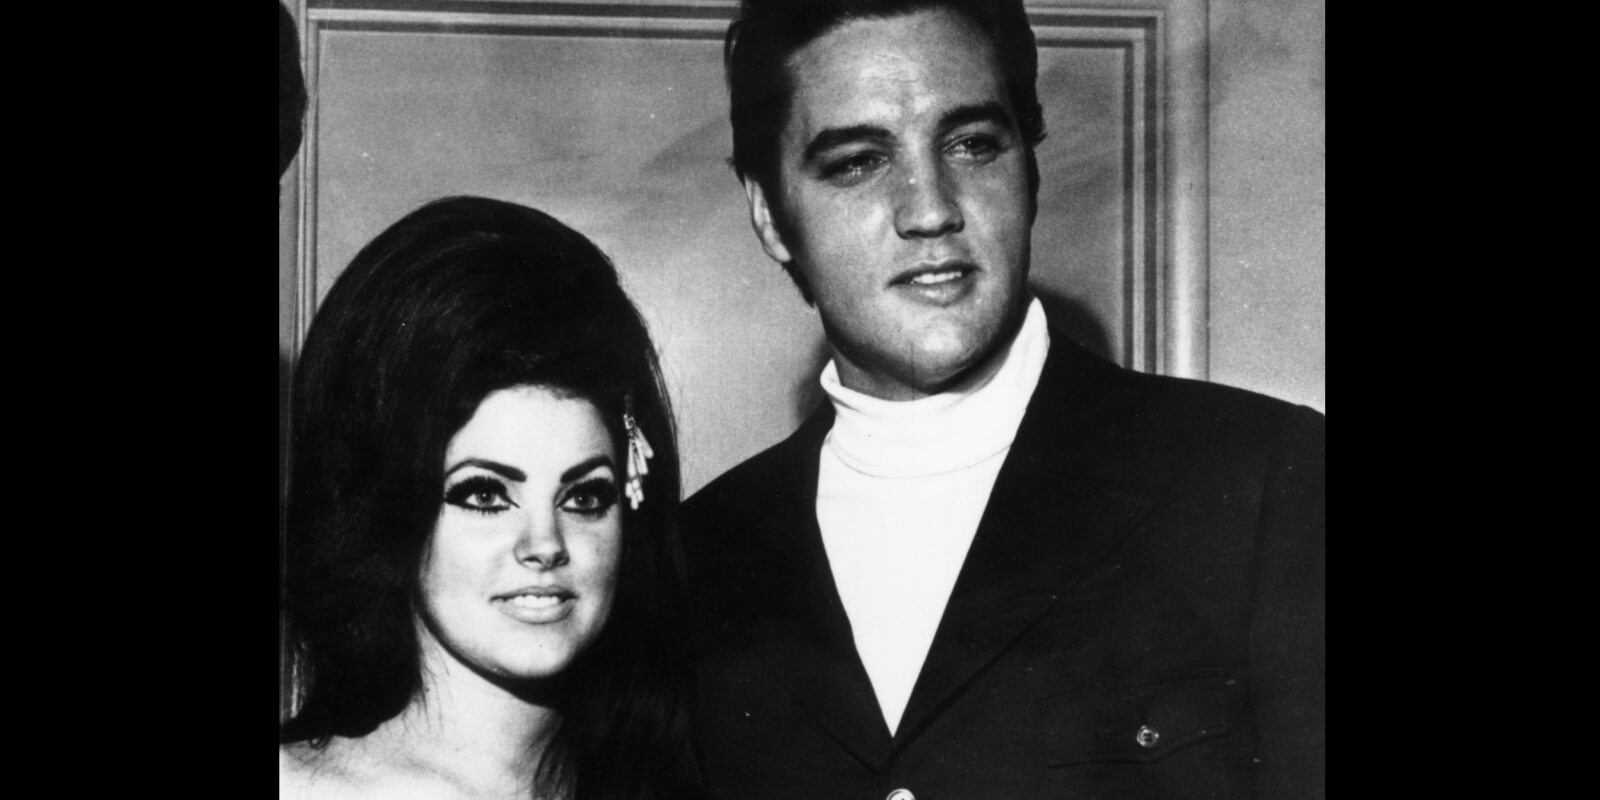 Priscilla Presley and Elvis Presley photographed in Las Vegas in 1971.